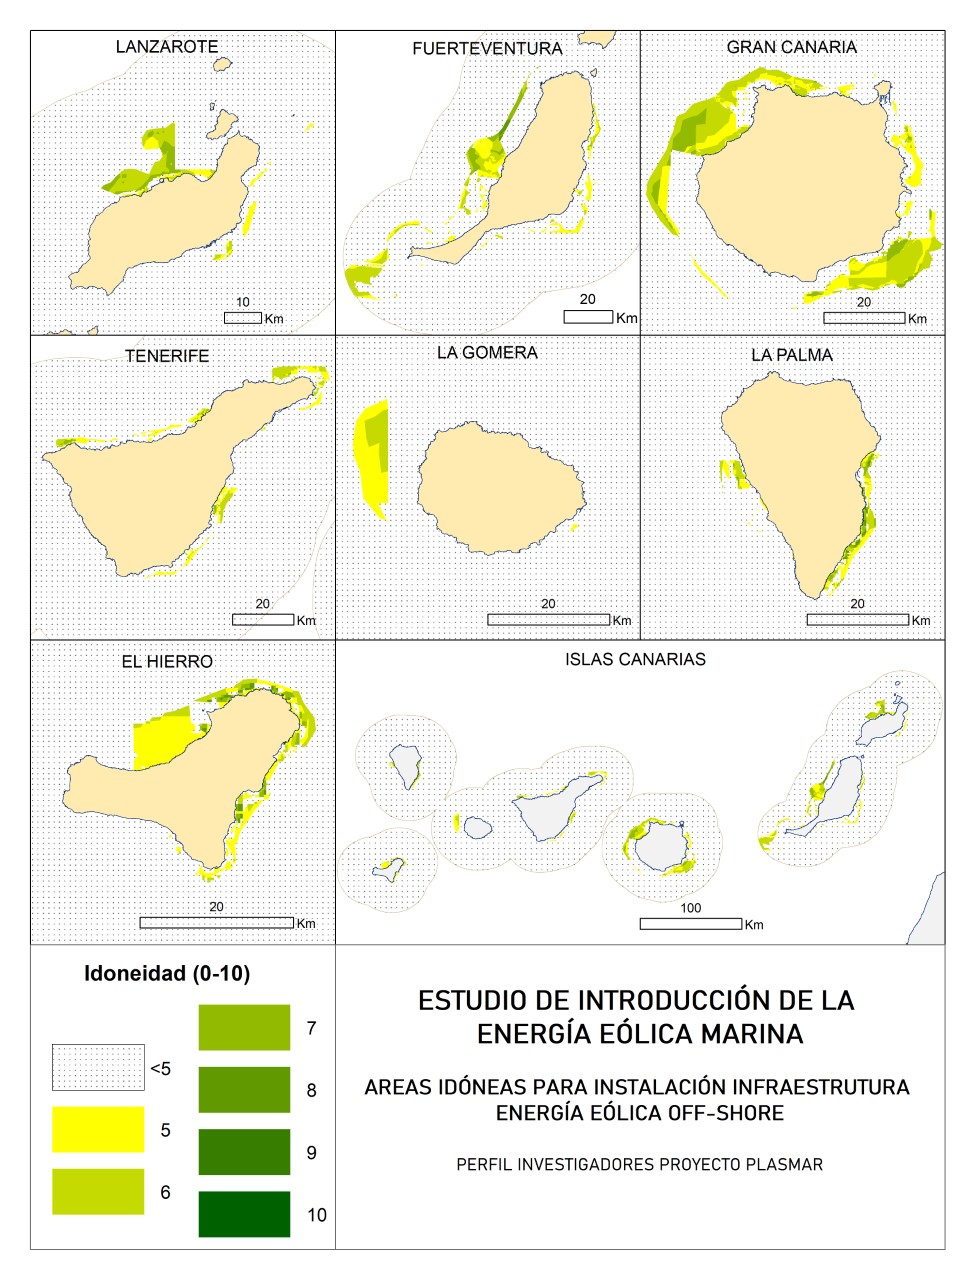 ULPGC. Energía eólica marina en las islas/ canariasnoticias